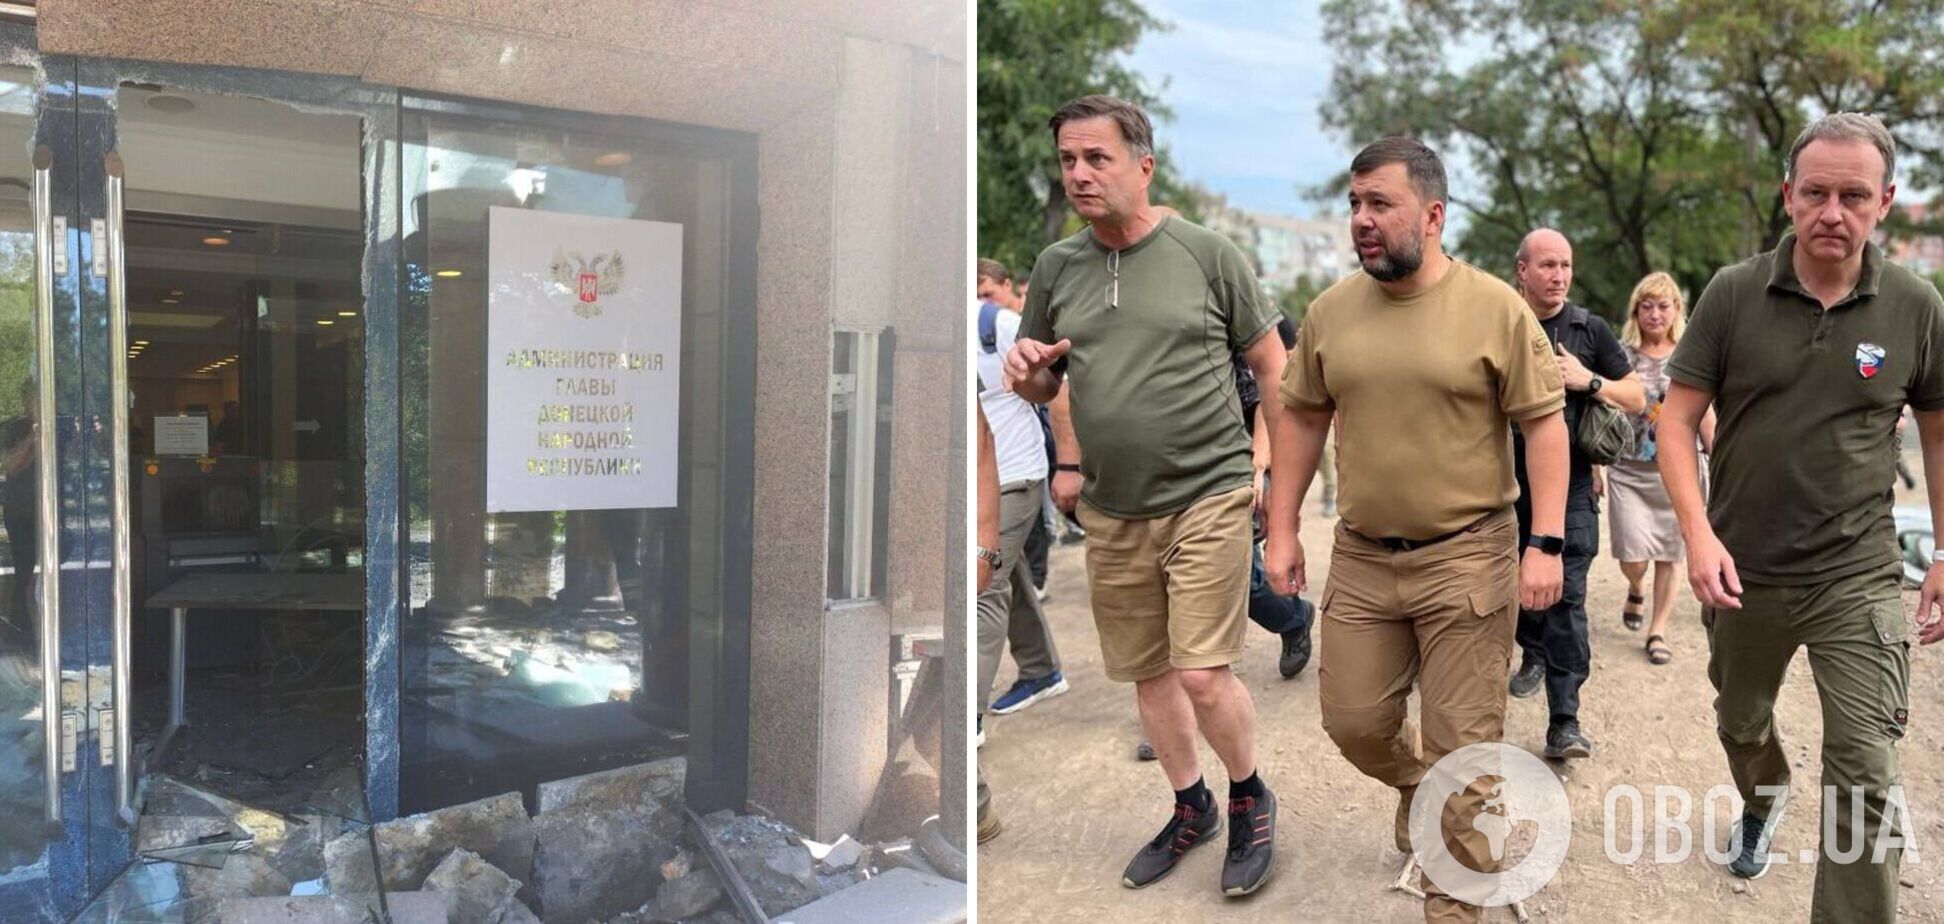 'Прямое попадание': оккупанты заявили об ударе по 'администрации' Пушилина в Донецке